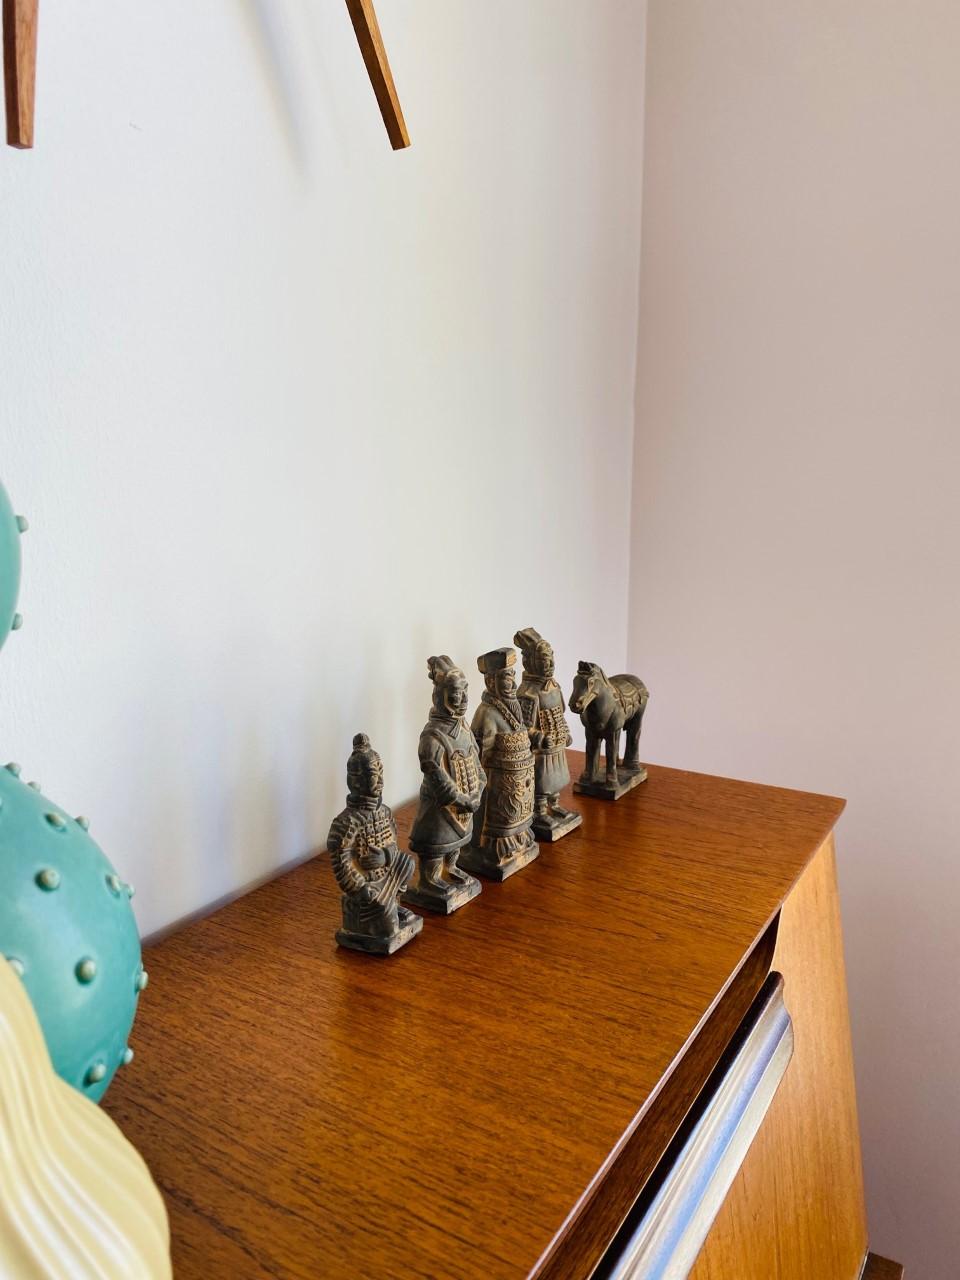 miniature terracotta warriors